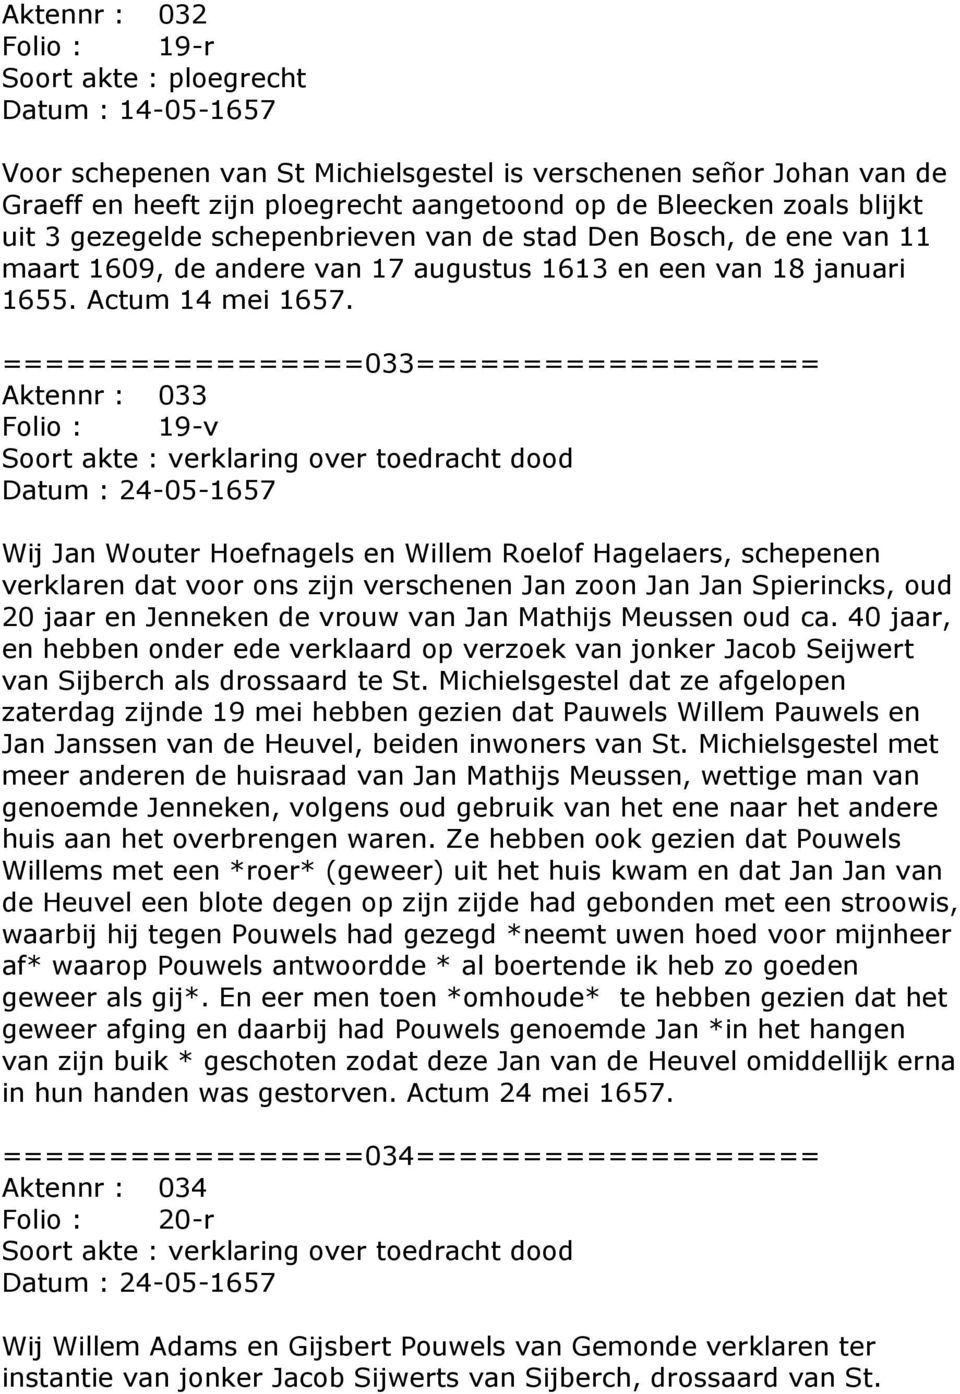 =================033=================== Aktennr : 033 Folio : 19-v Soort akte : verklaring over toedracht dood Datum : 24-05-1657 Wij Jan Wouter Hoefnagels en Willem Roelof Hagelaers, schepenen